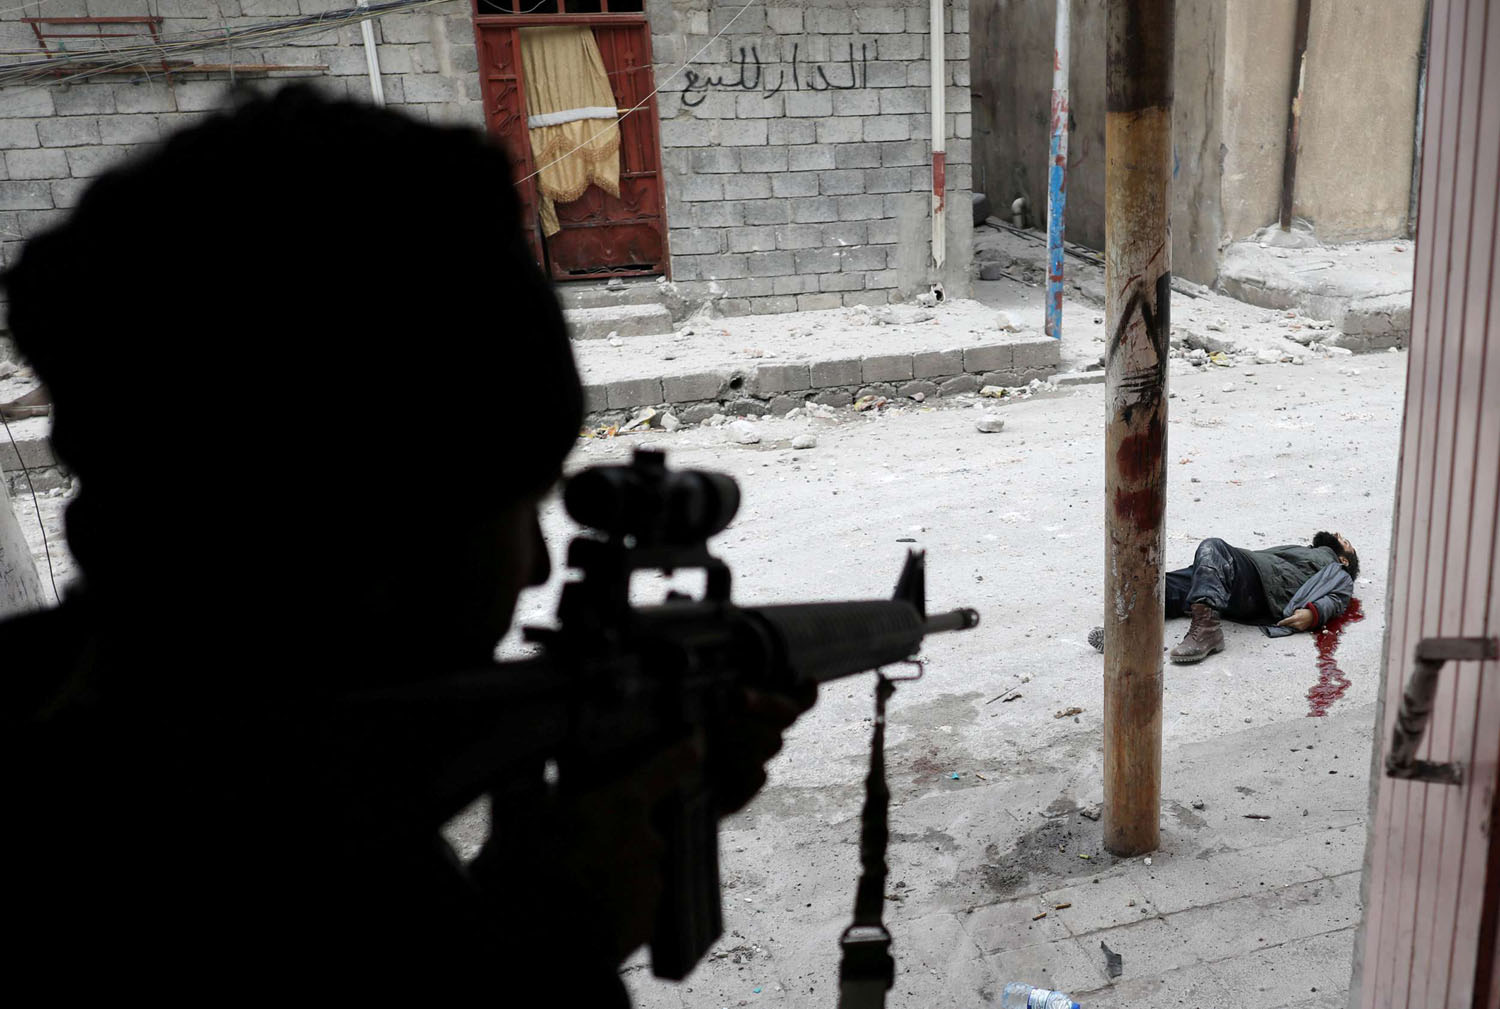 جندي عراقي بالقرب من جثة لمقاتل من داعش